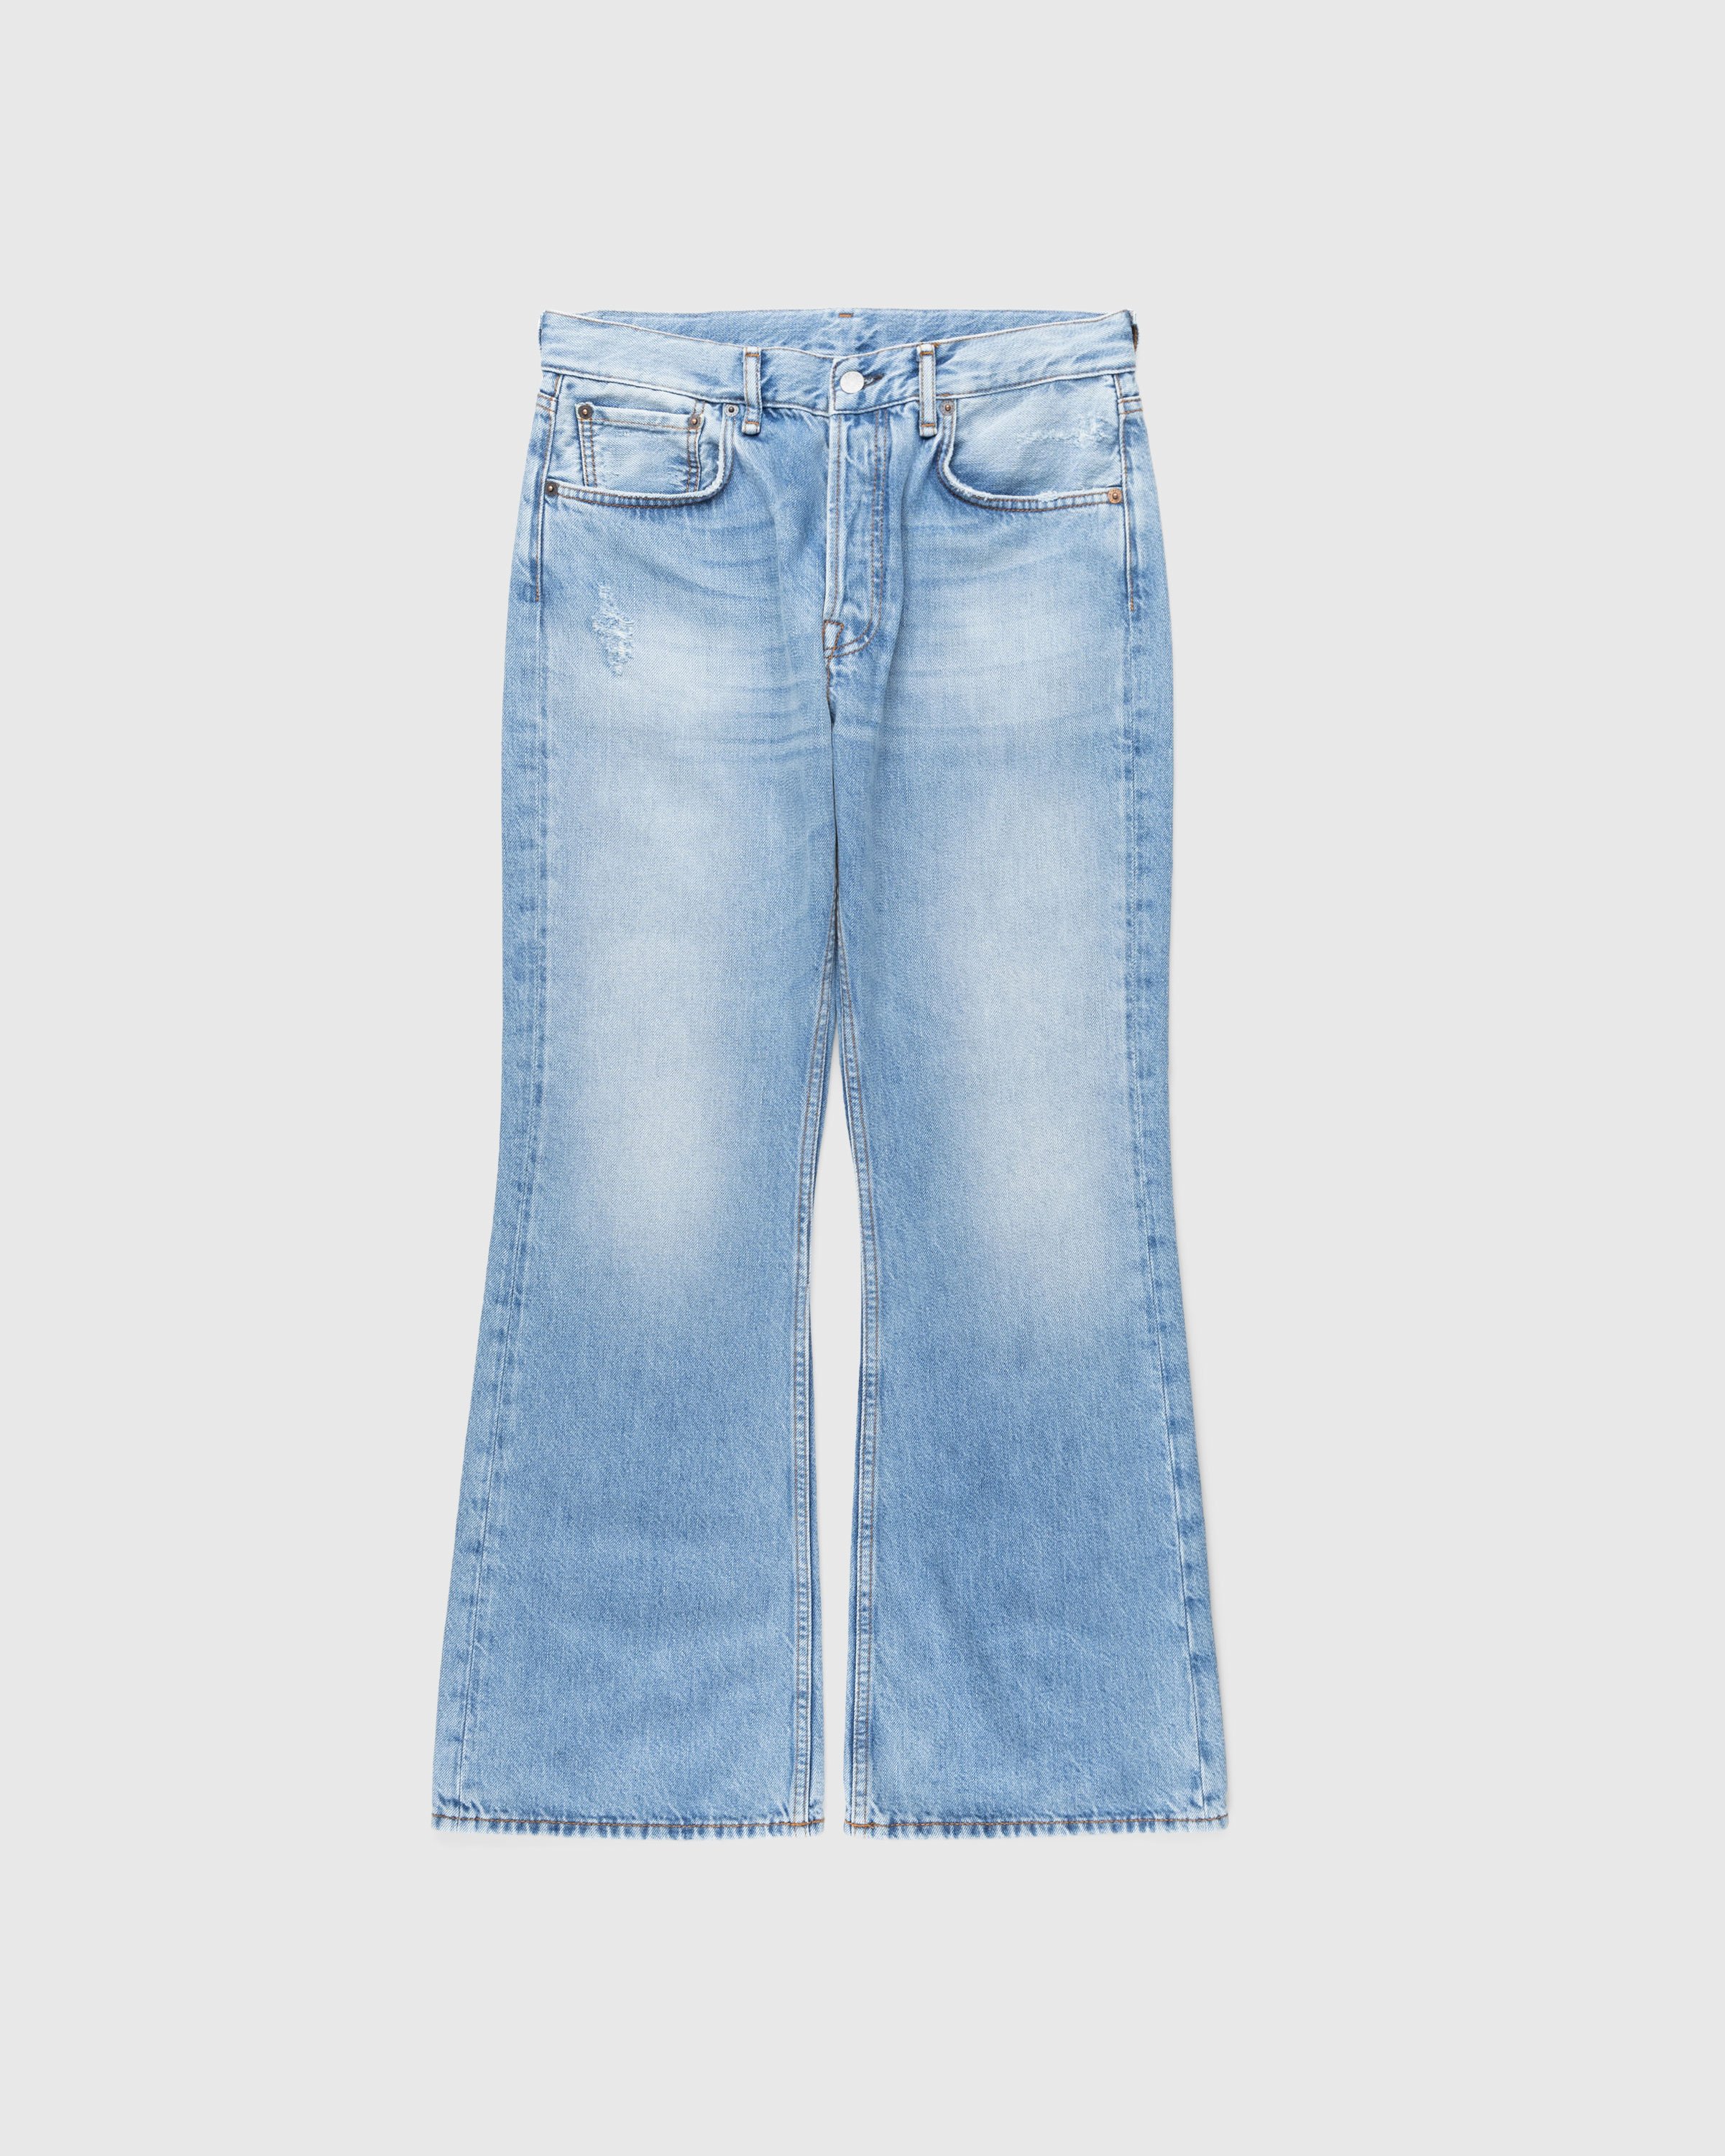 Acne Studios - Regular Fit Jeans 1992 Light Blue Vintage - Clothing - Blue - Image 1